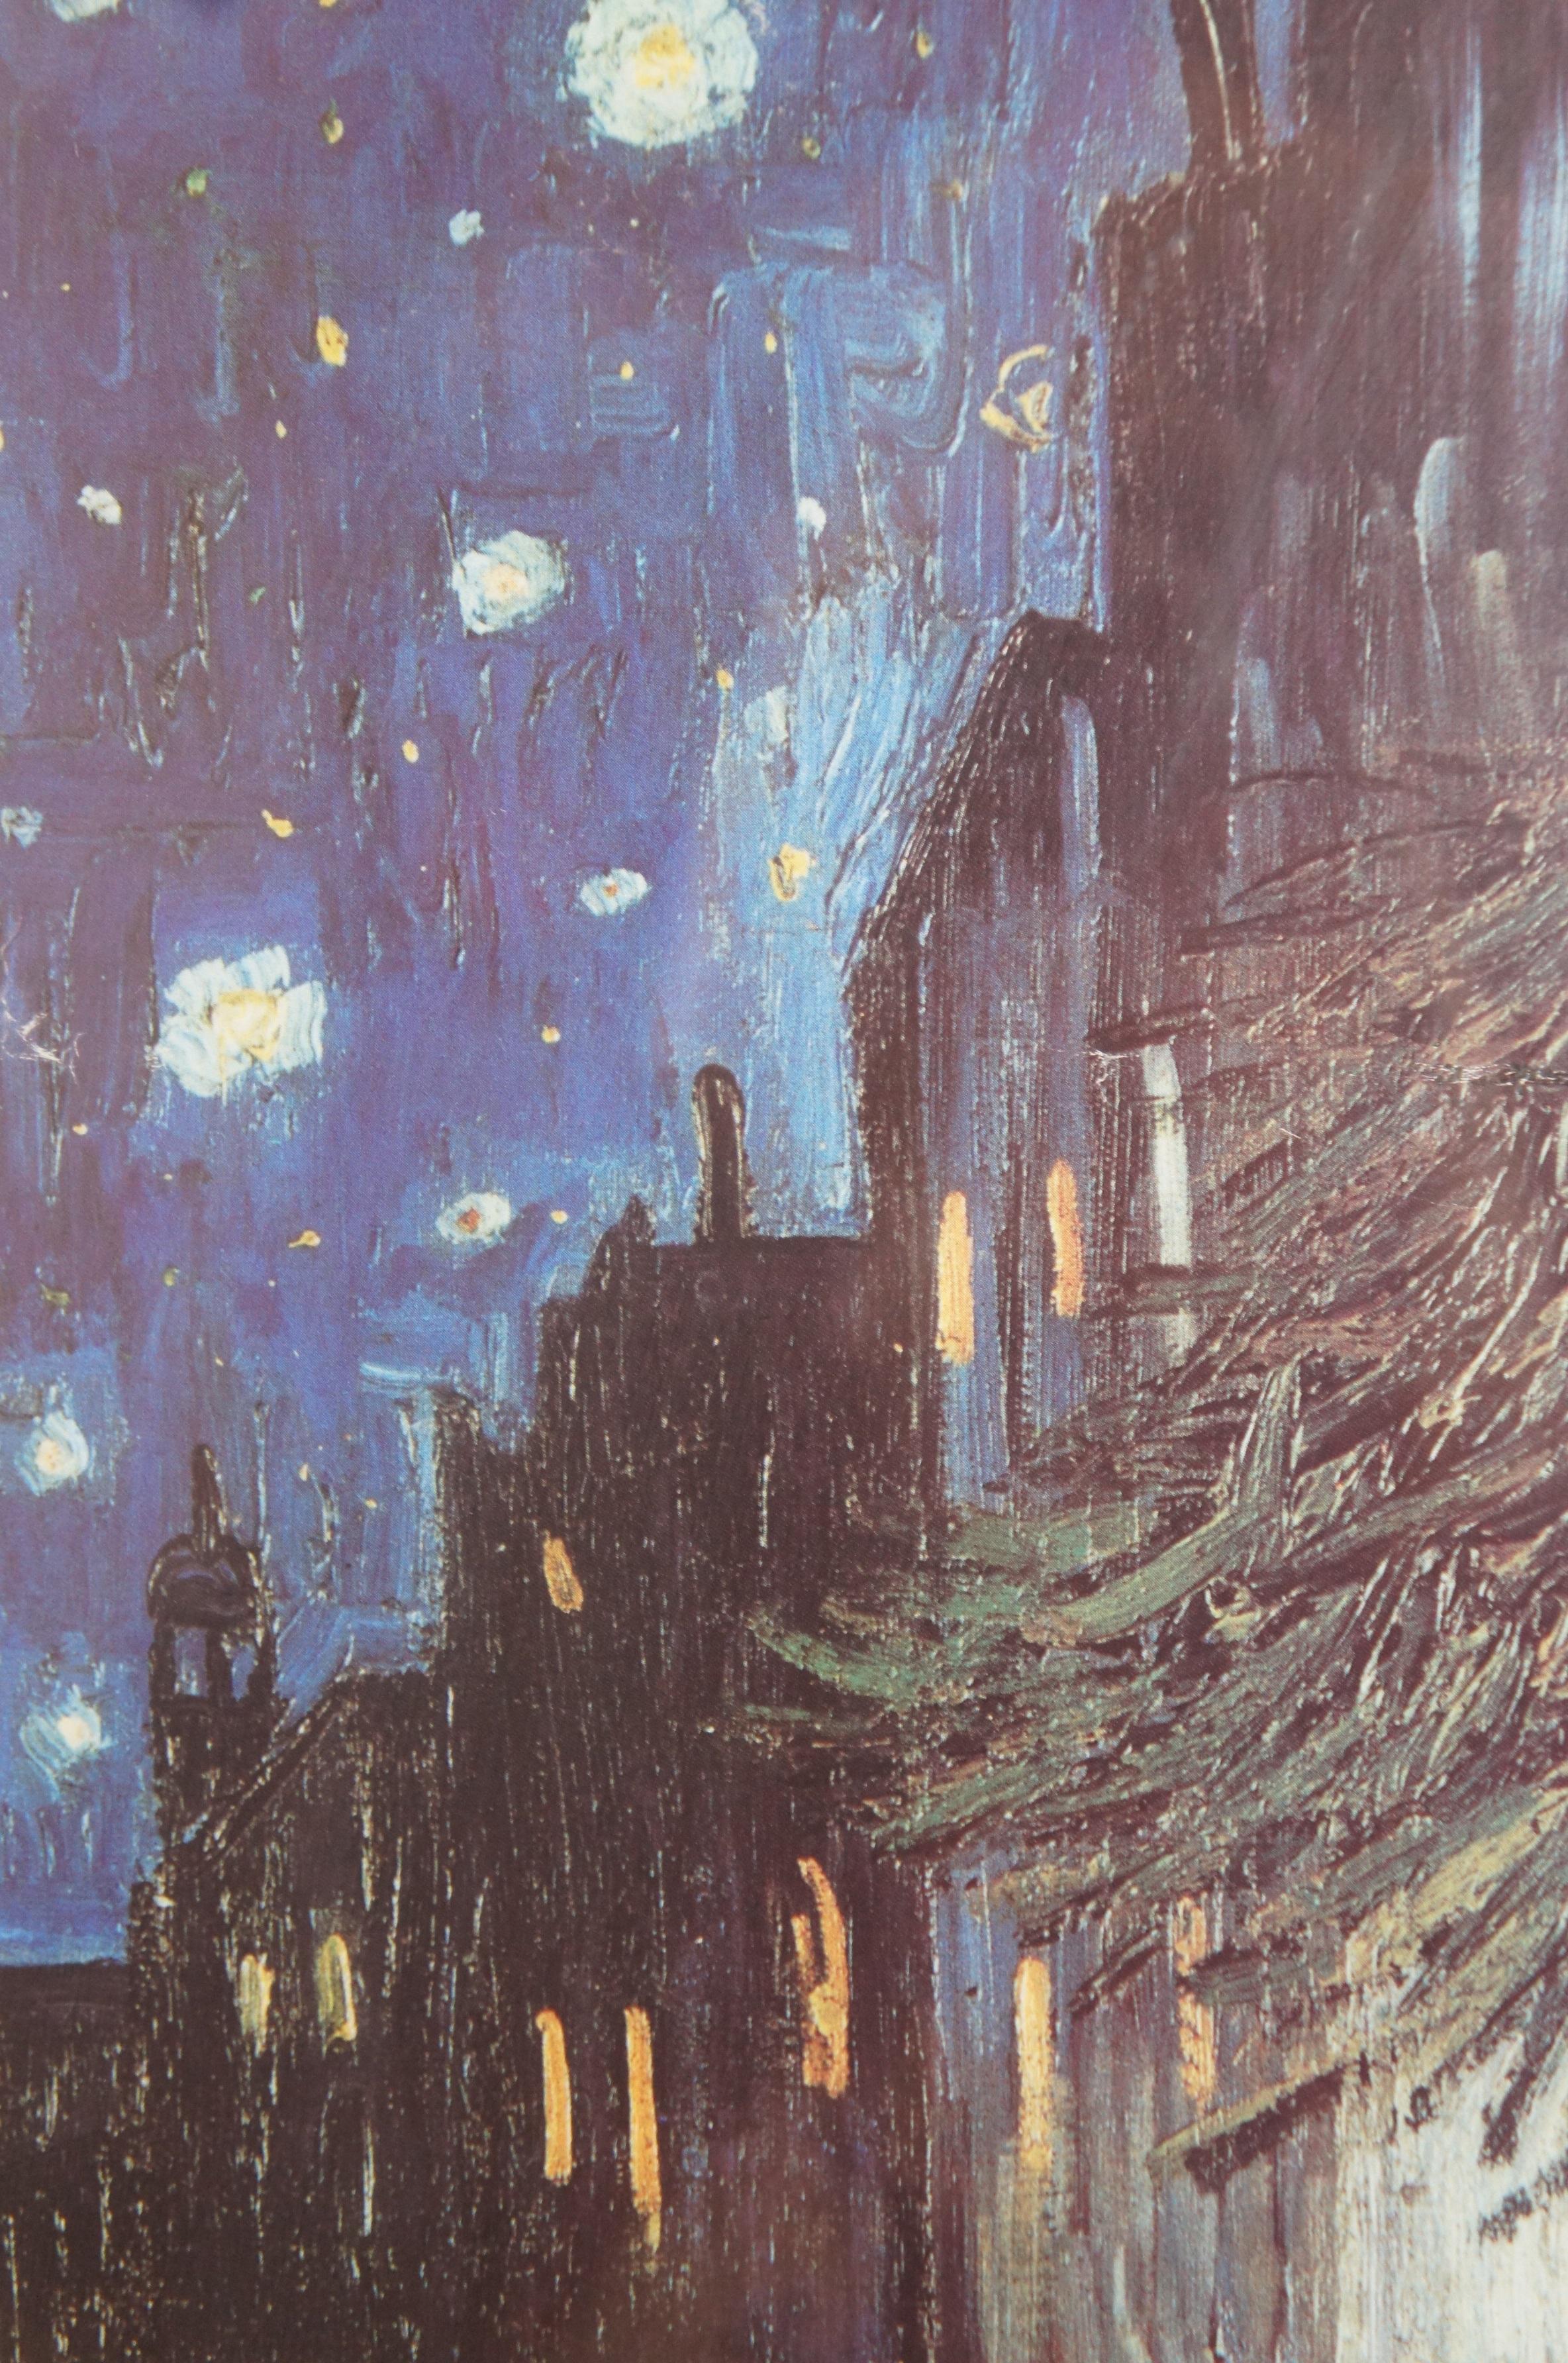 Vincent van Gogh Cafe Terrasse bei Nacht Stadtbild Lithographie drucken 29